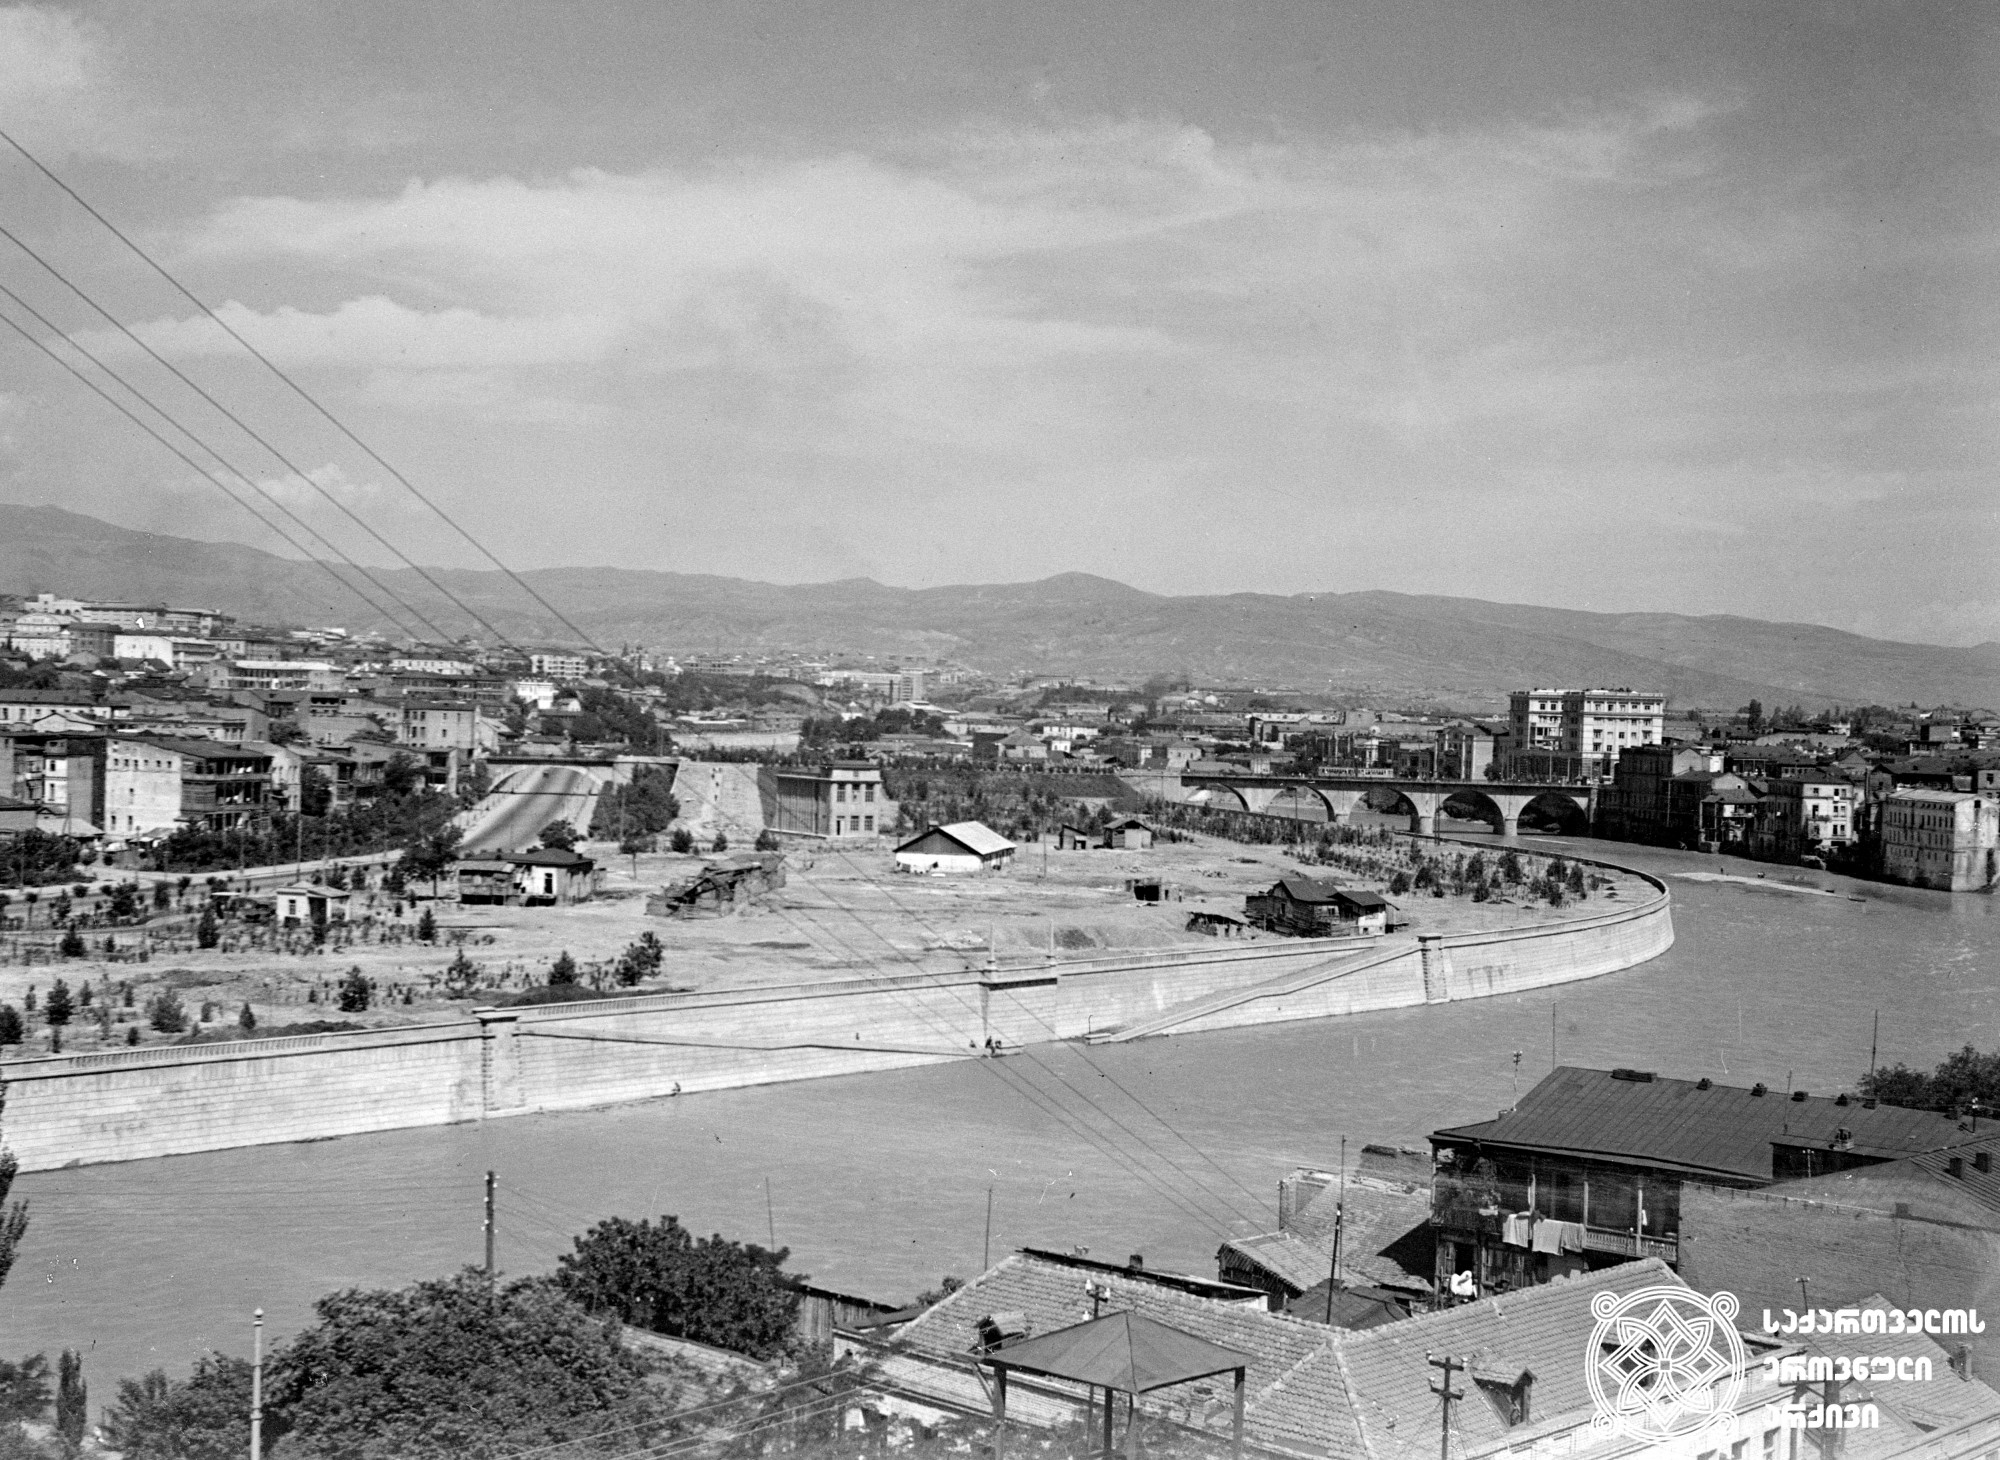 თბილისის მარჯვენა სანაპიროს ხედი და კარლ მარქსის სახელობის ხიდი (დღევანდელი ჩუღურეთის ხიდი. დედაენის ბაღის მიმდებარედ). <br>თბილისი. ფოტო: ვ. ჩერკასოვი. <br>1939. <br>
View of Tbilisi right embankment and Karl Marx bridge (today Chughureti Bridge, Deda Ena Park area). Tbilisi. <br>Photo by V. Cherkasov. <br>1939.